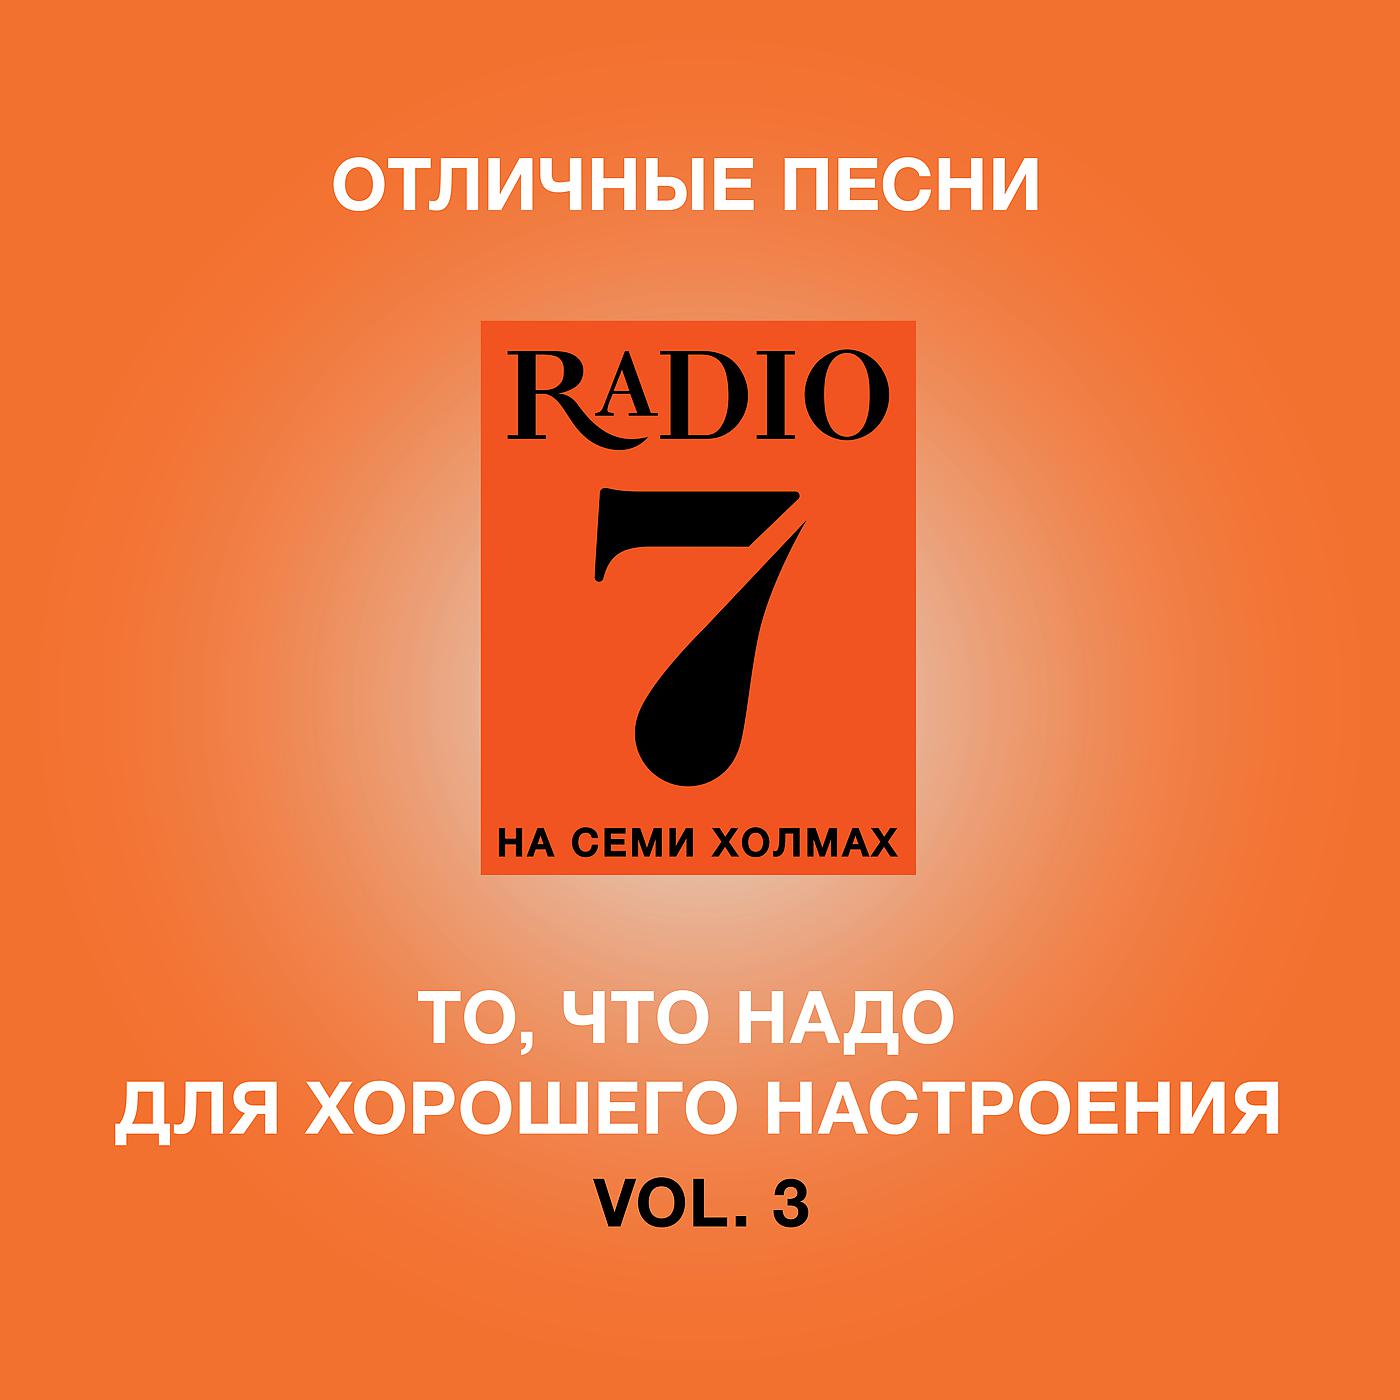 Радио семь нижний. Радио 7. Радио 7 на семи холмах. Радио 7 логотип. Радио 7 на семи холмах логотип.